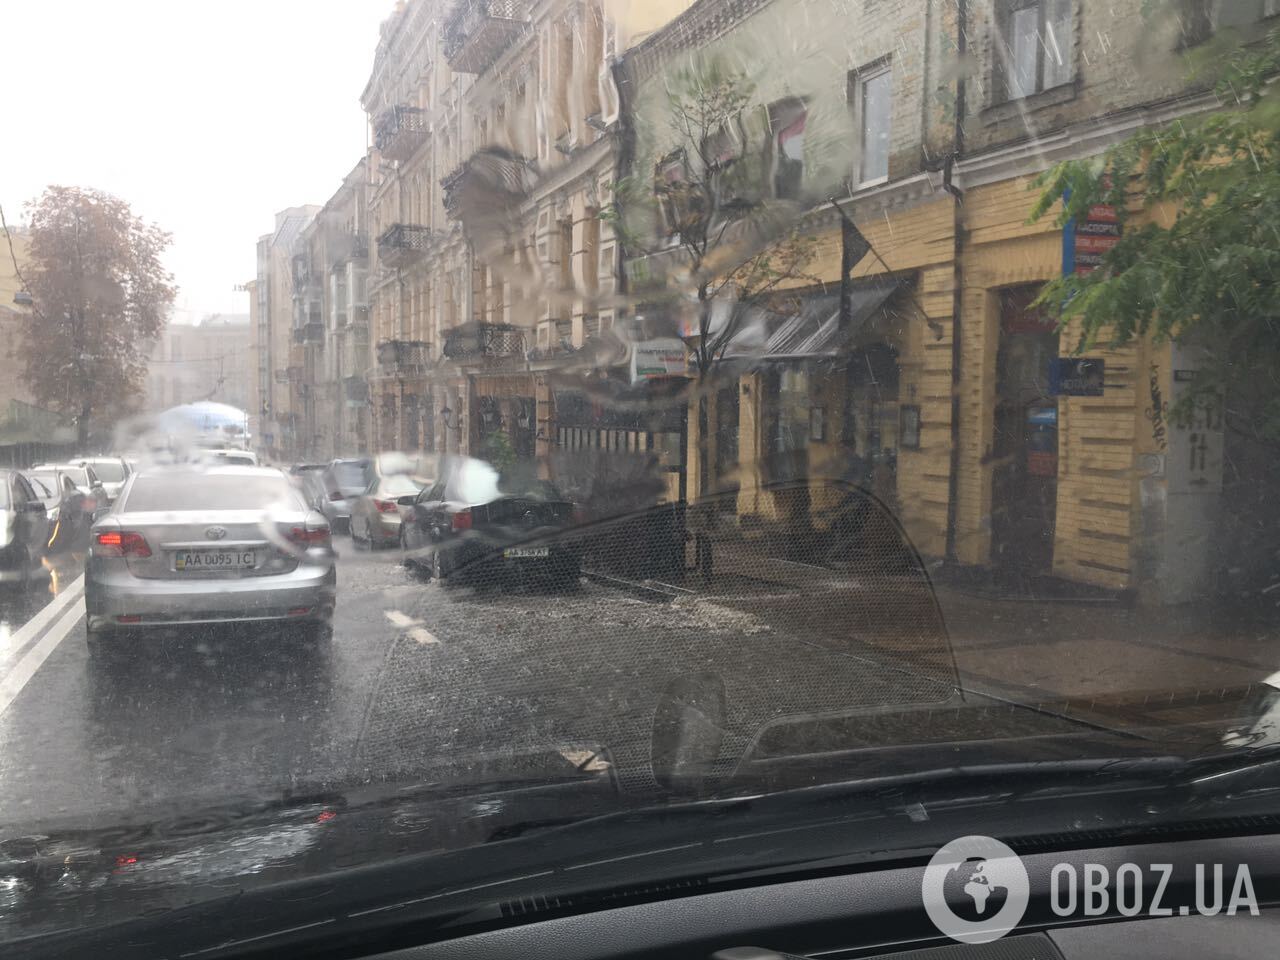 "Гром гремит, земля трясется": погодный "сюрприз" в Киеве удивил сеть